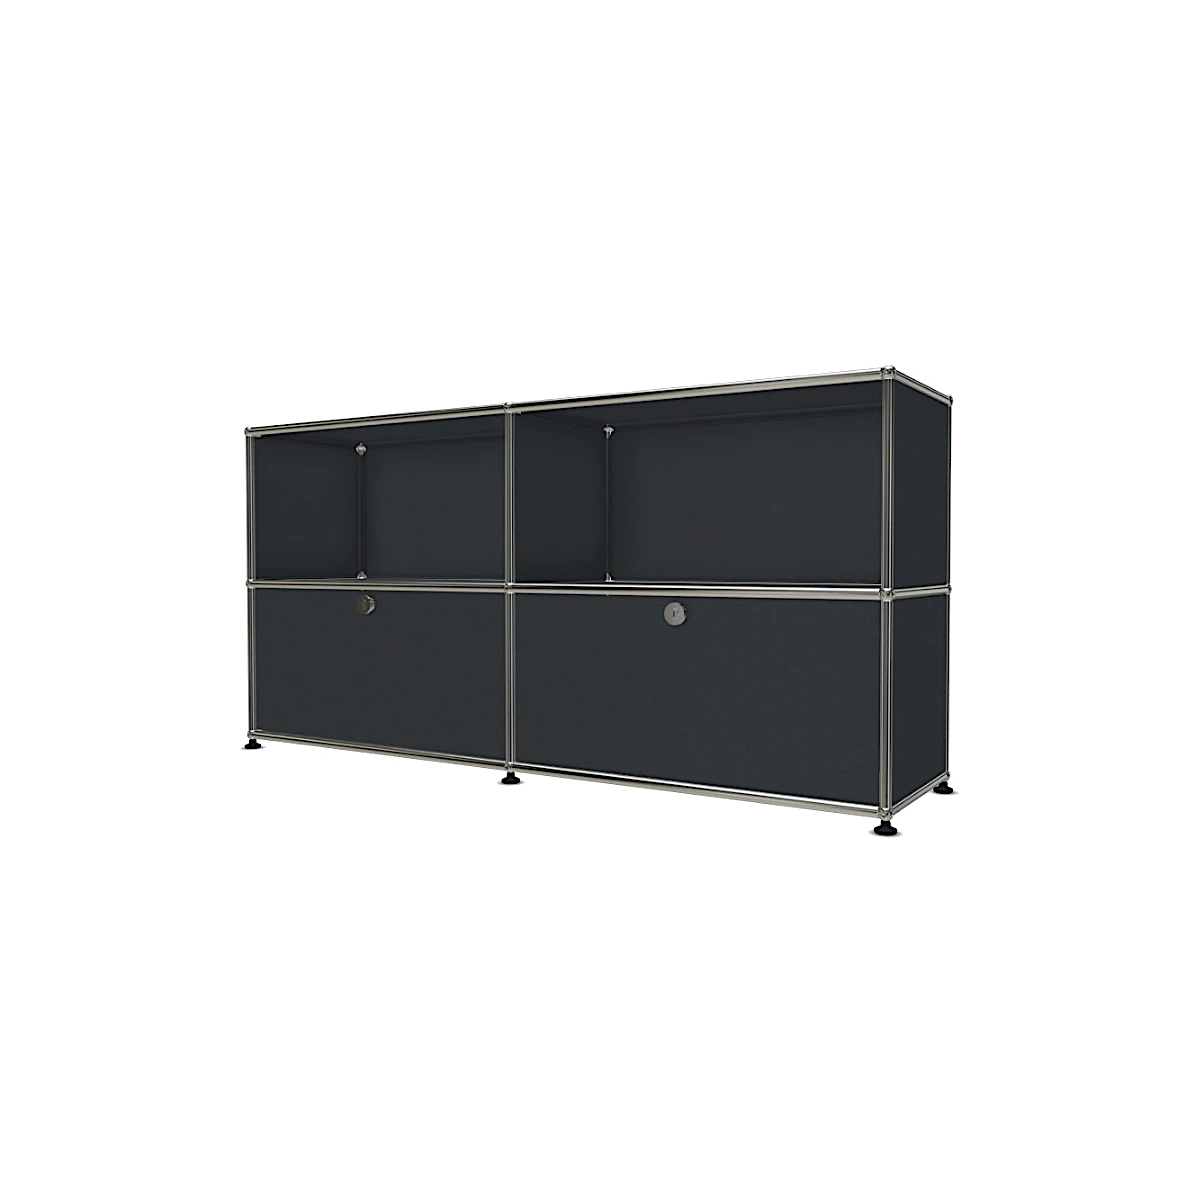 Designer Sideboard „Sideboard 2x2 mit zwei Klappen“ von USM Haller in anthrazitgrau bei LHL im Onlineshop kaufen – Frontansicht leicht gedreht